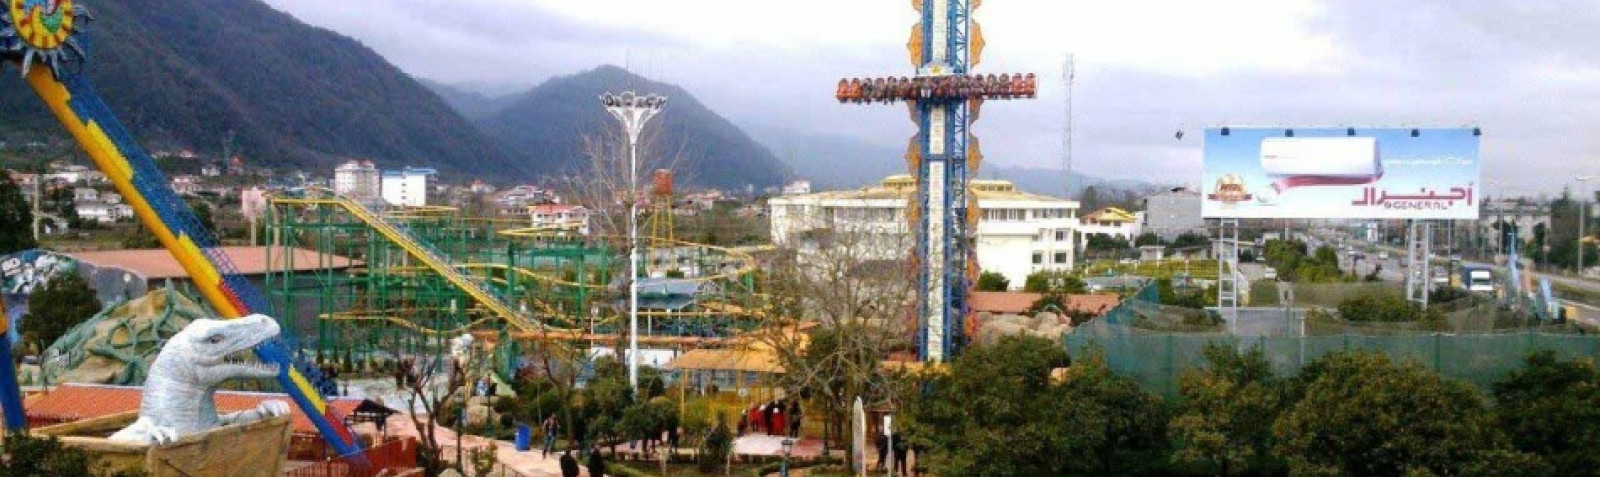 Dreamland Amusement Park